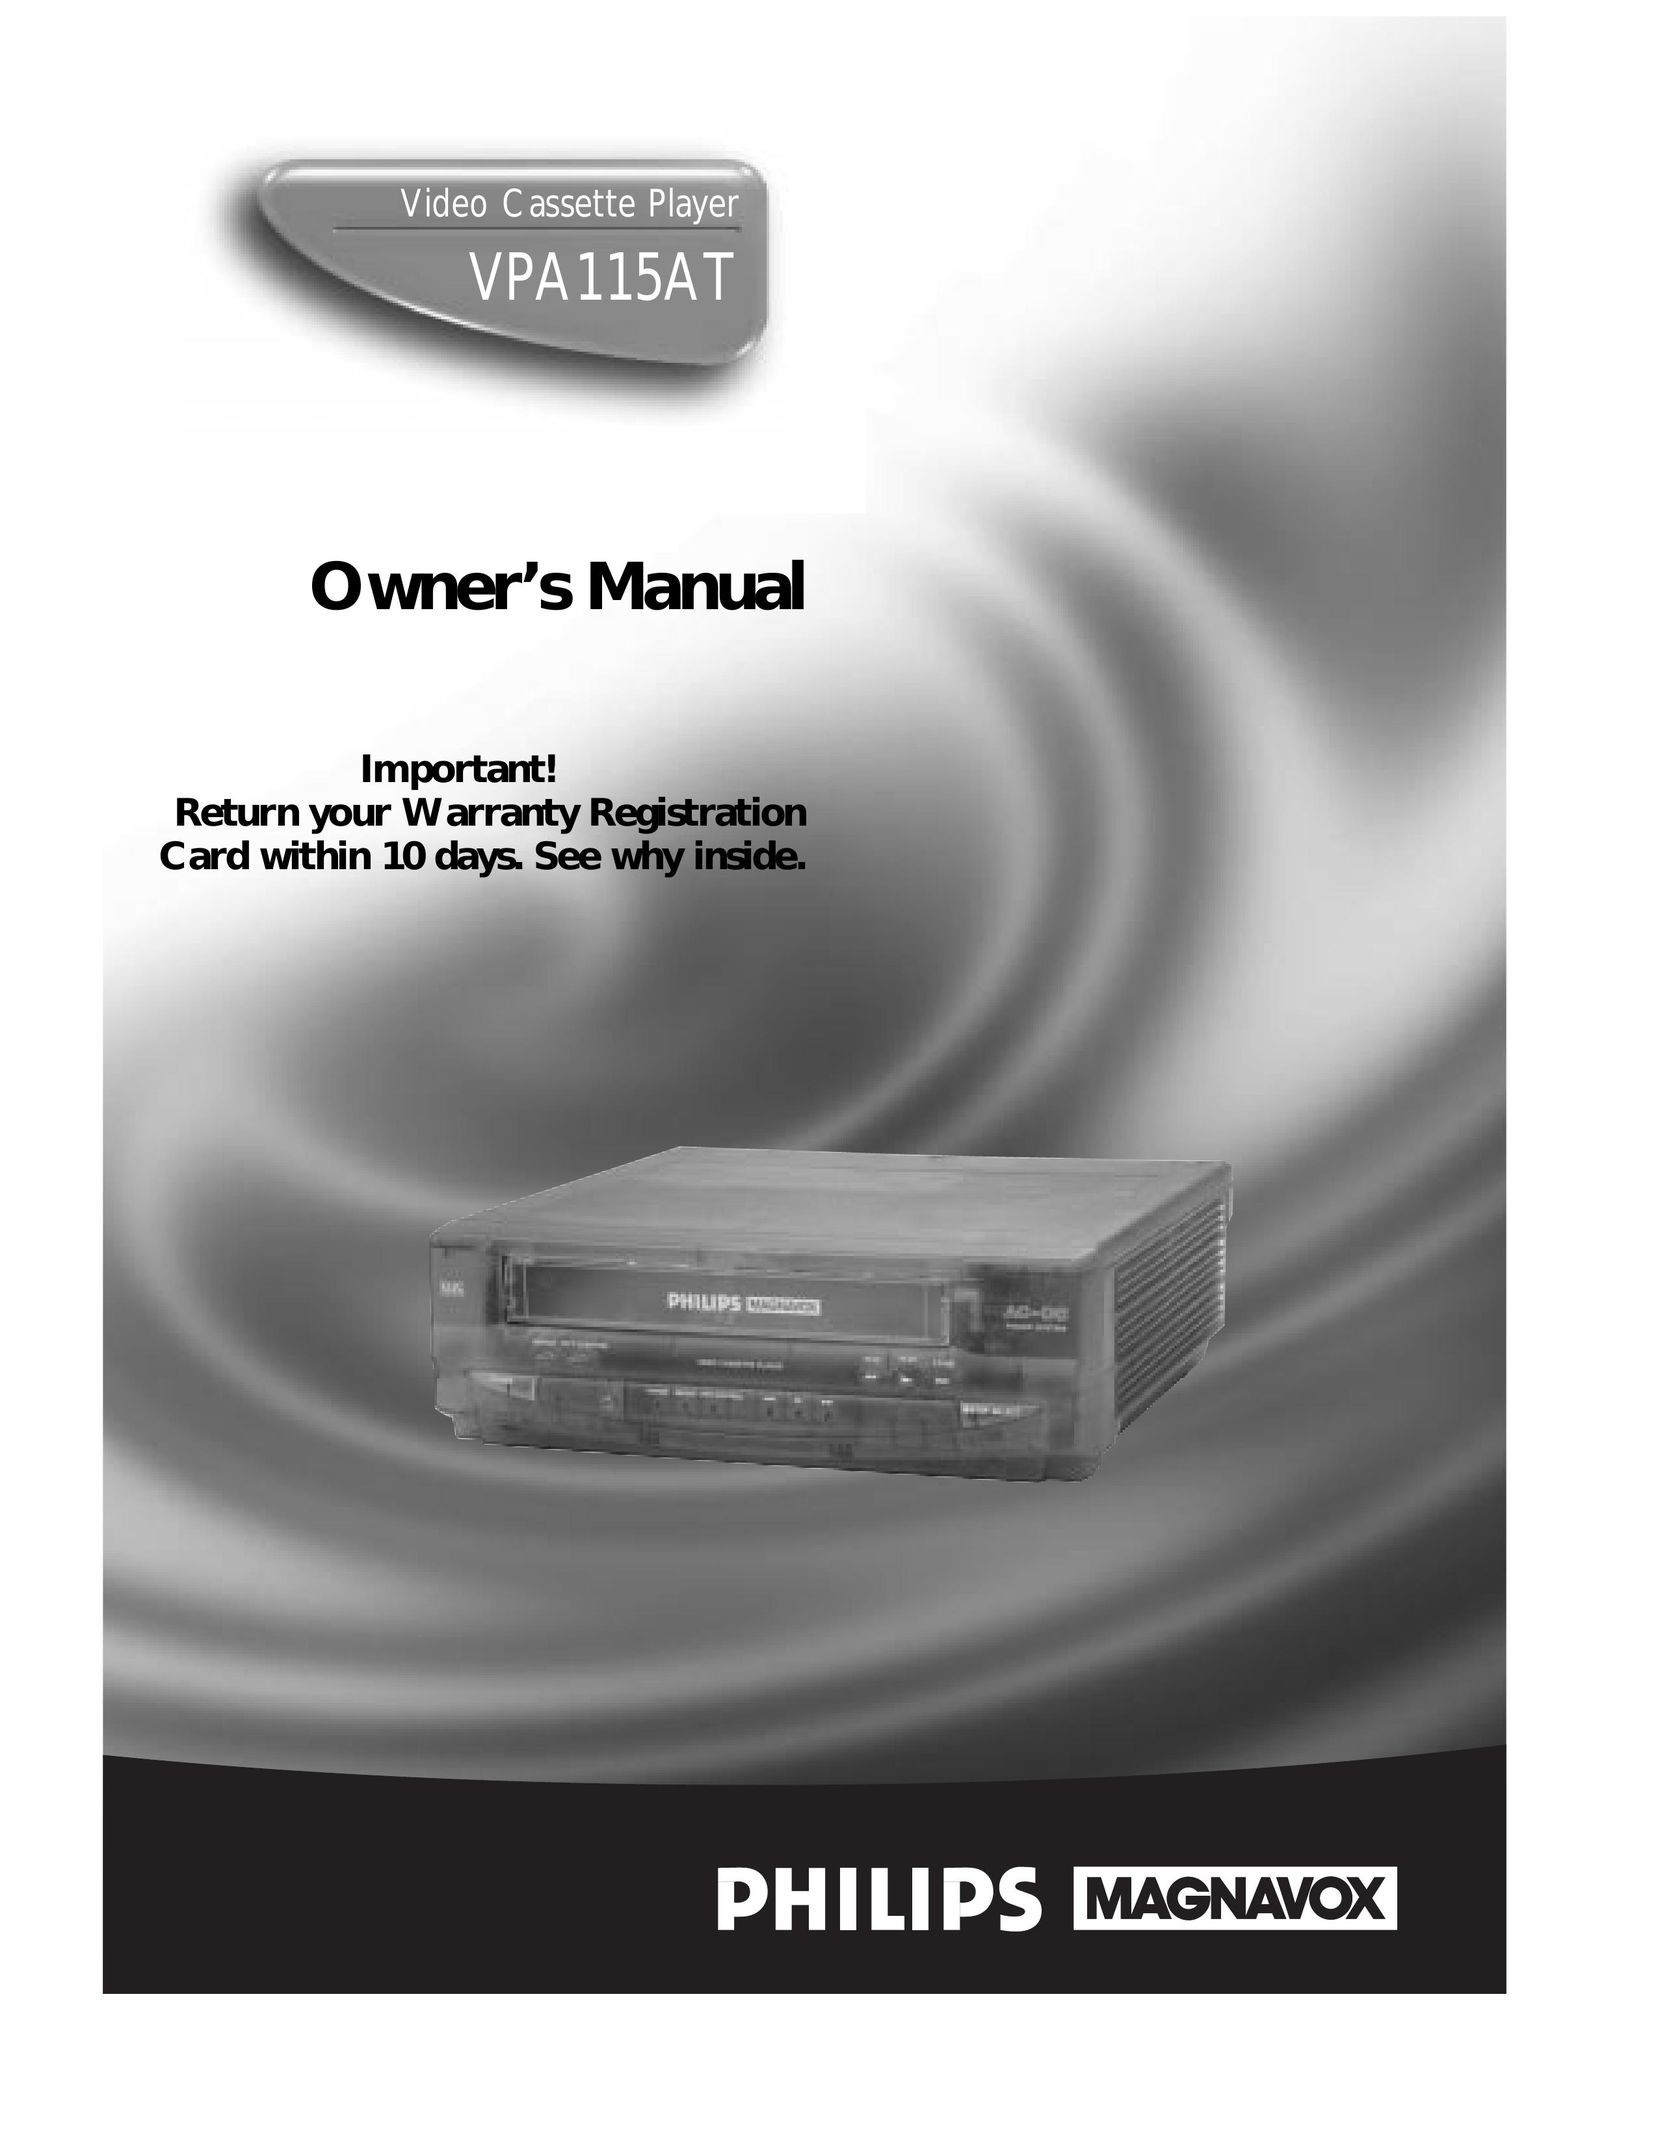 Magnavox VPA115AT VCR User Manual